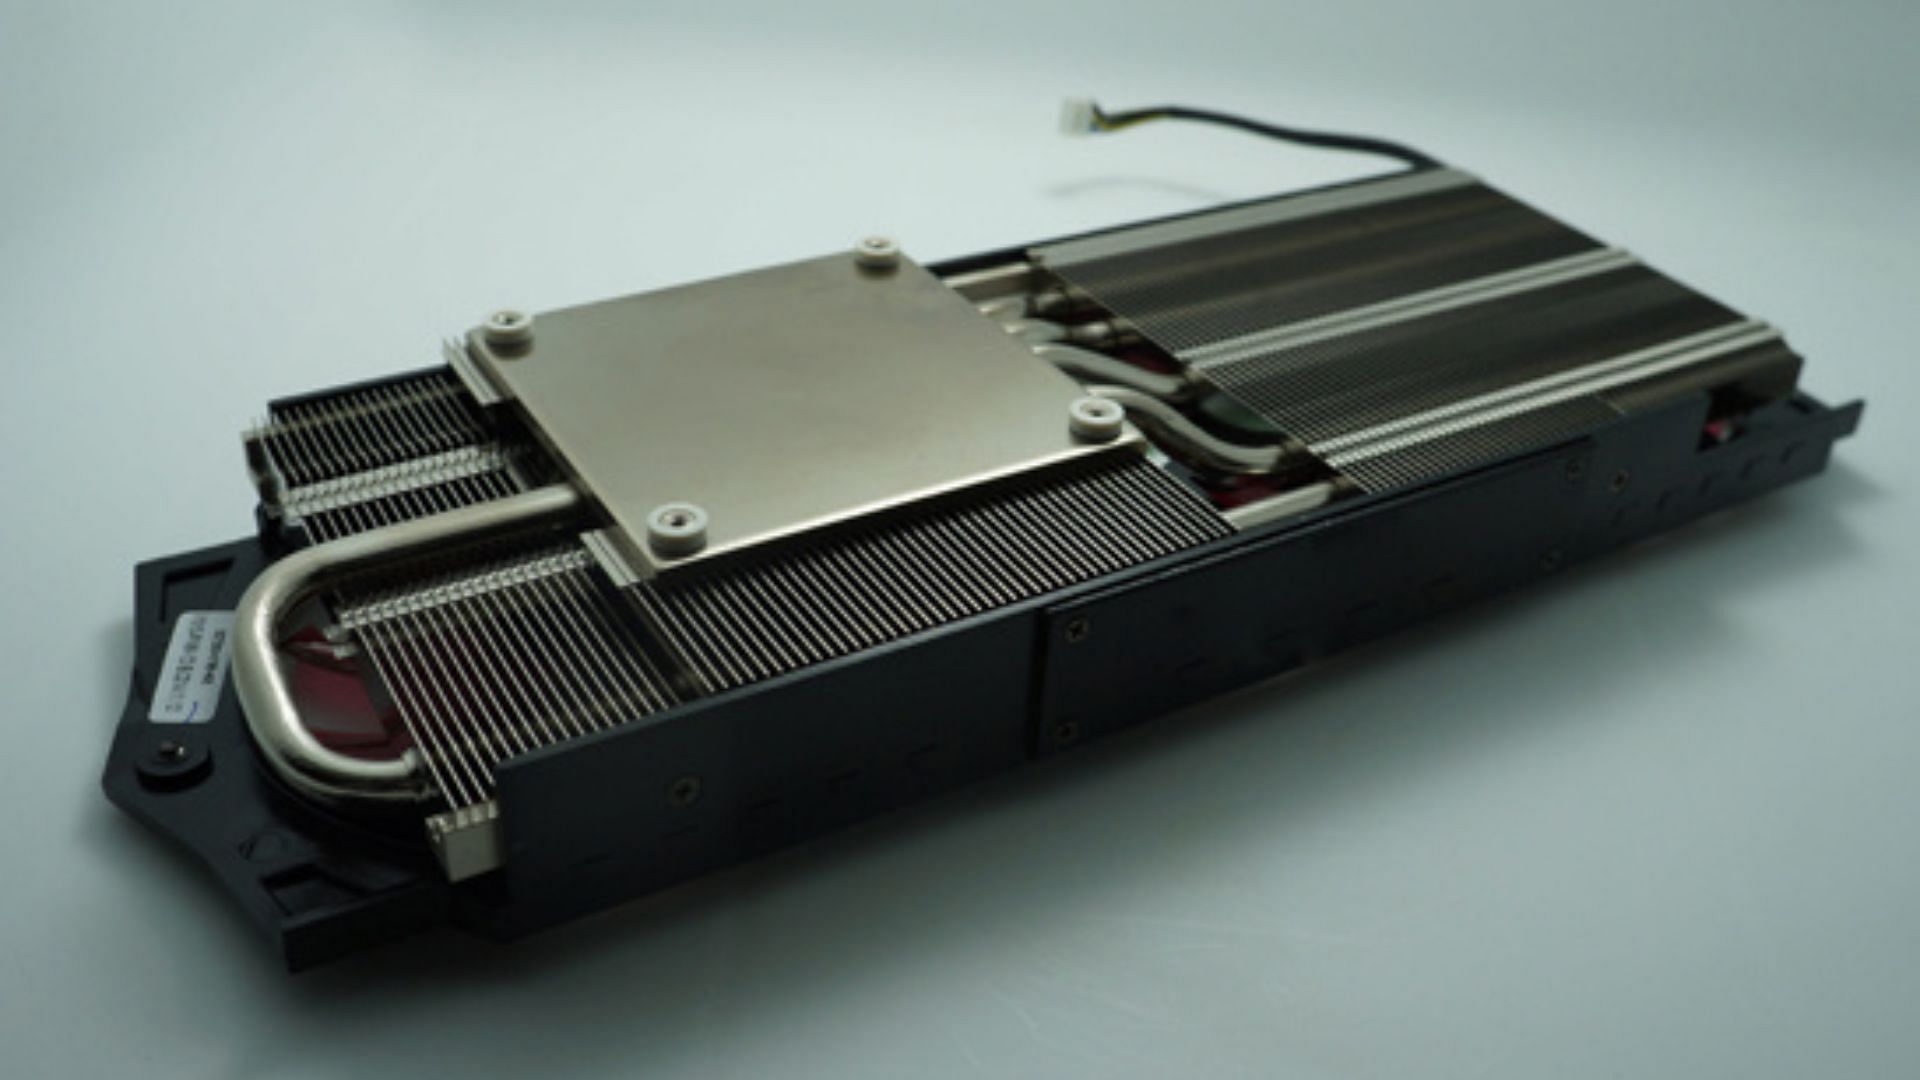 The heatsink of a GPU (Image via Made in China)